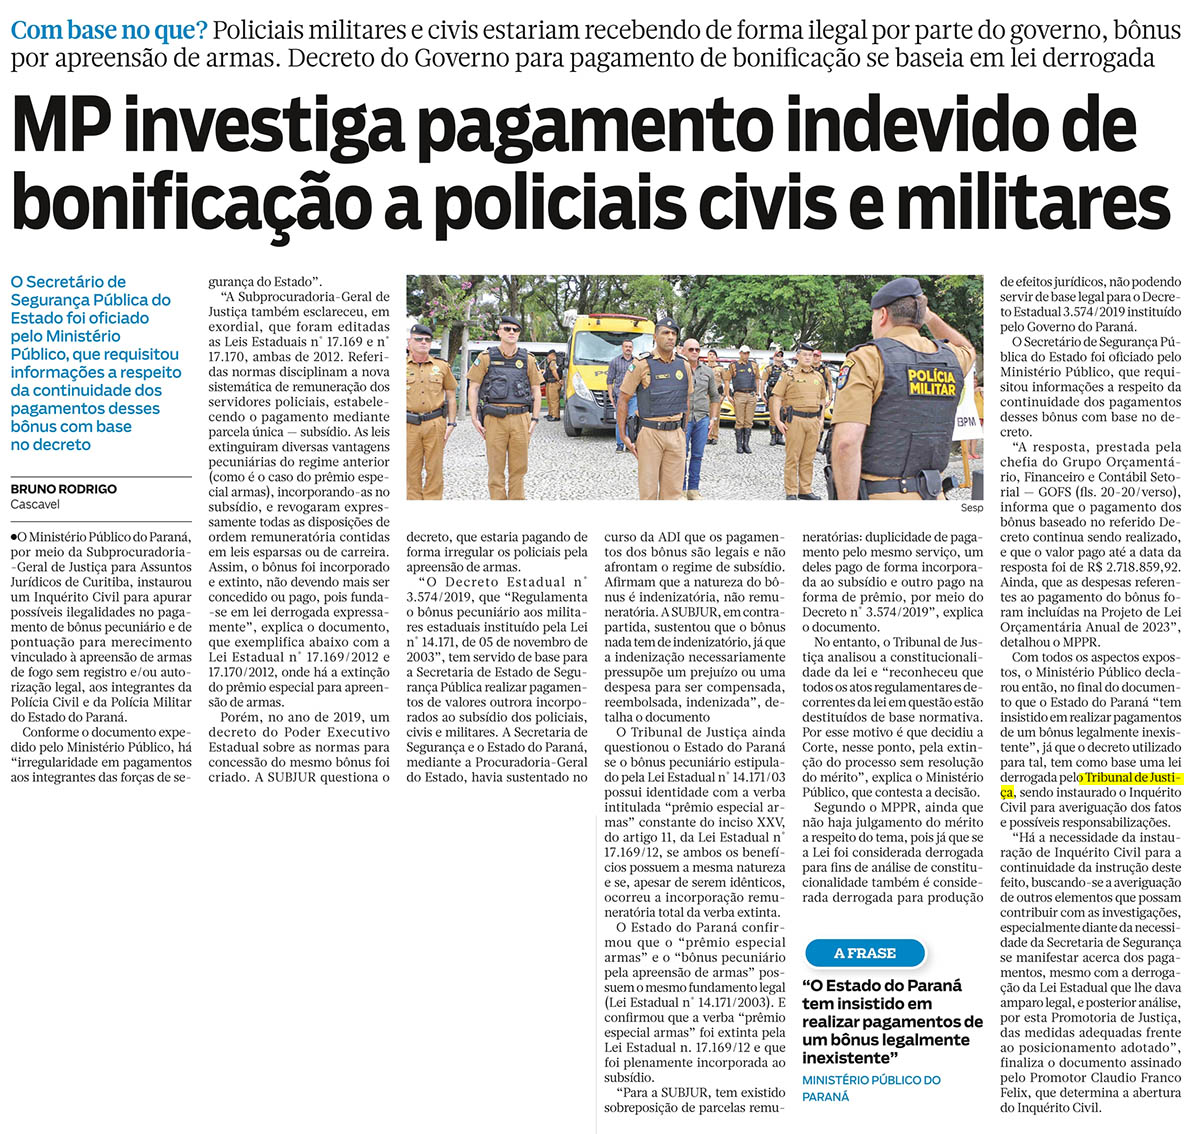 MP investiga pagamento indevido de bonificação a policiais civis e militares - image 1